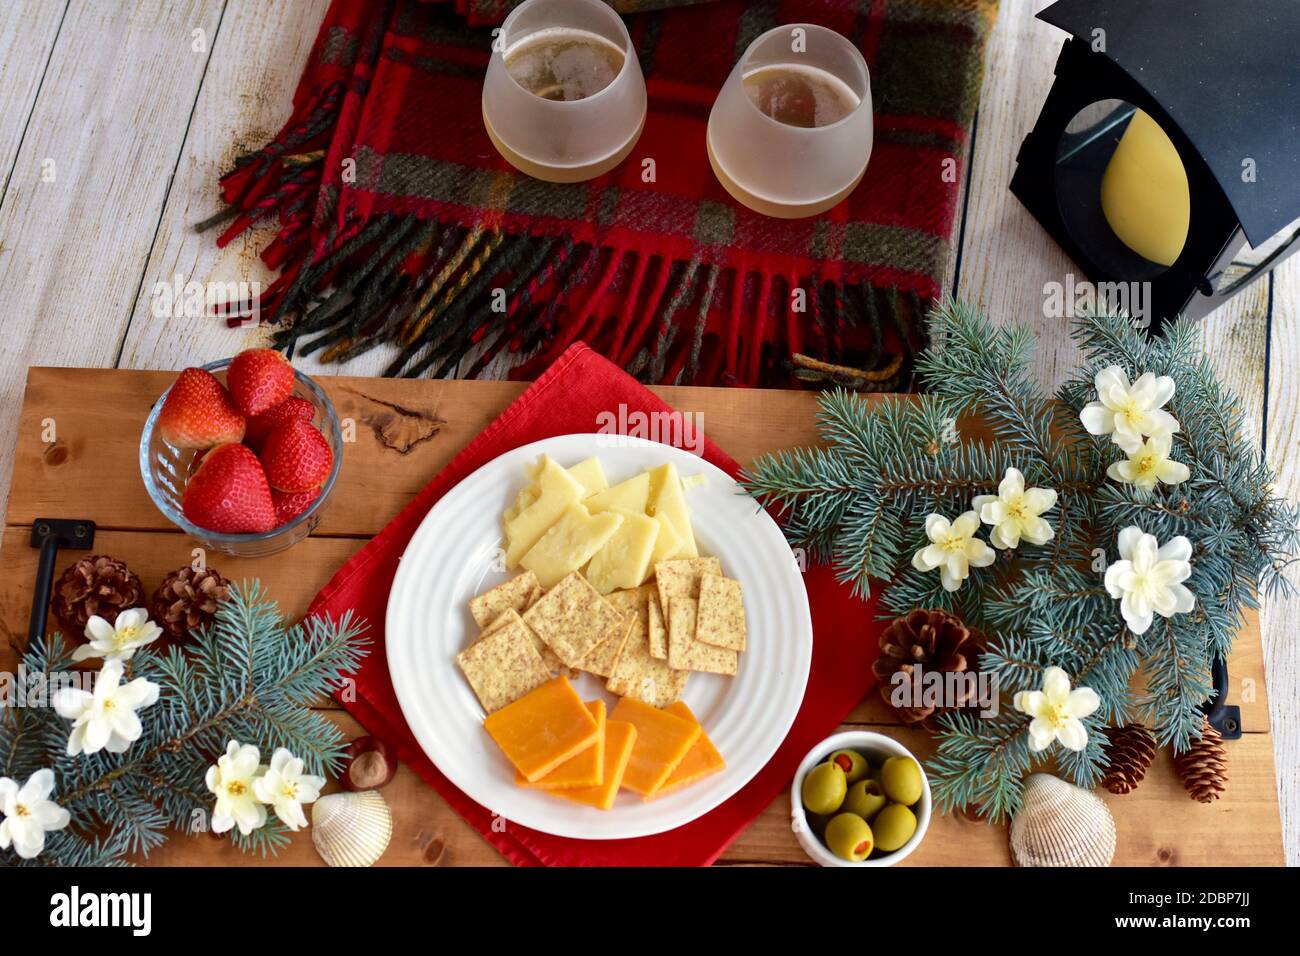 Festliche Weihnachten Urlaub saisonale Wurstplatte zu teilen und zu genießen Ein gemütlicher Abend zu Hause während der Winterfeiern Stockfoto